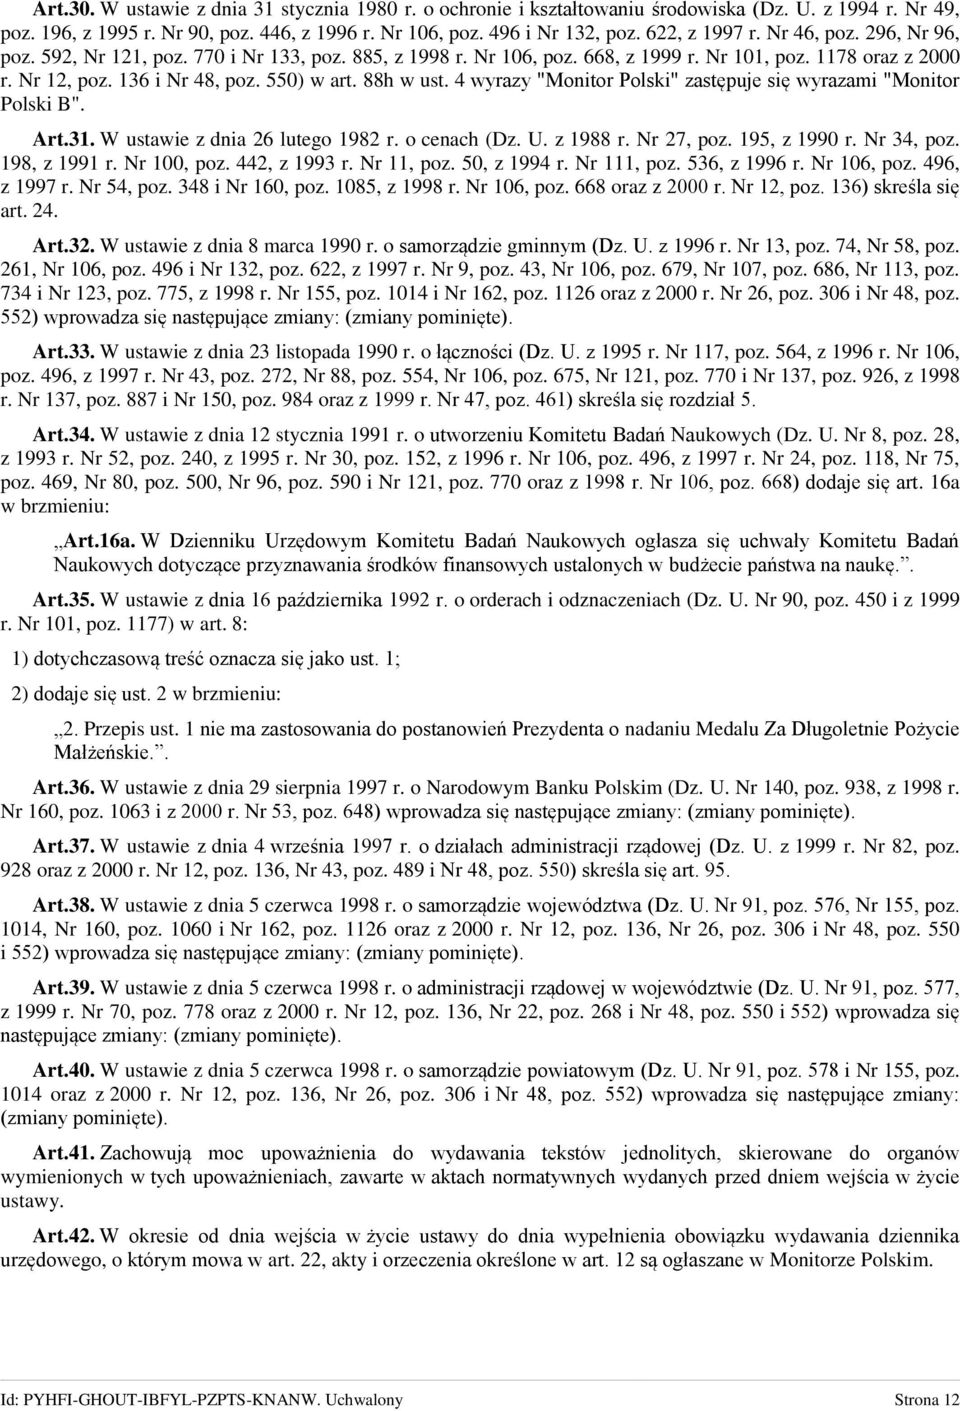 88h w ust. 4 wyrazy "Monitor Polski" zastępuje się wyrazami "Monitor Polski B". Art.31. W ustawie z dnia 26 lutego 1982 r. o cenach (Dz. U. z 1988 r. Nr 27, poz. 195, z 1990 r. Nr 34, poz.